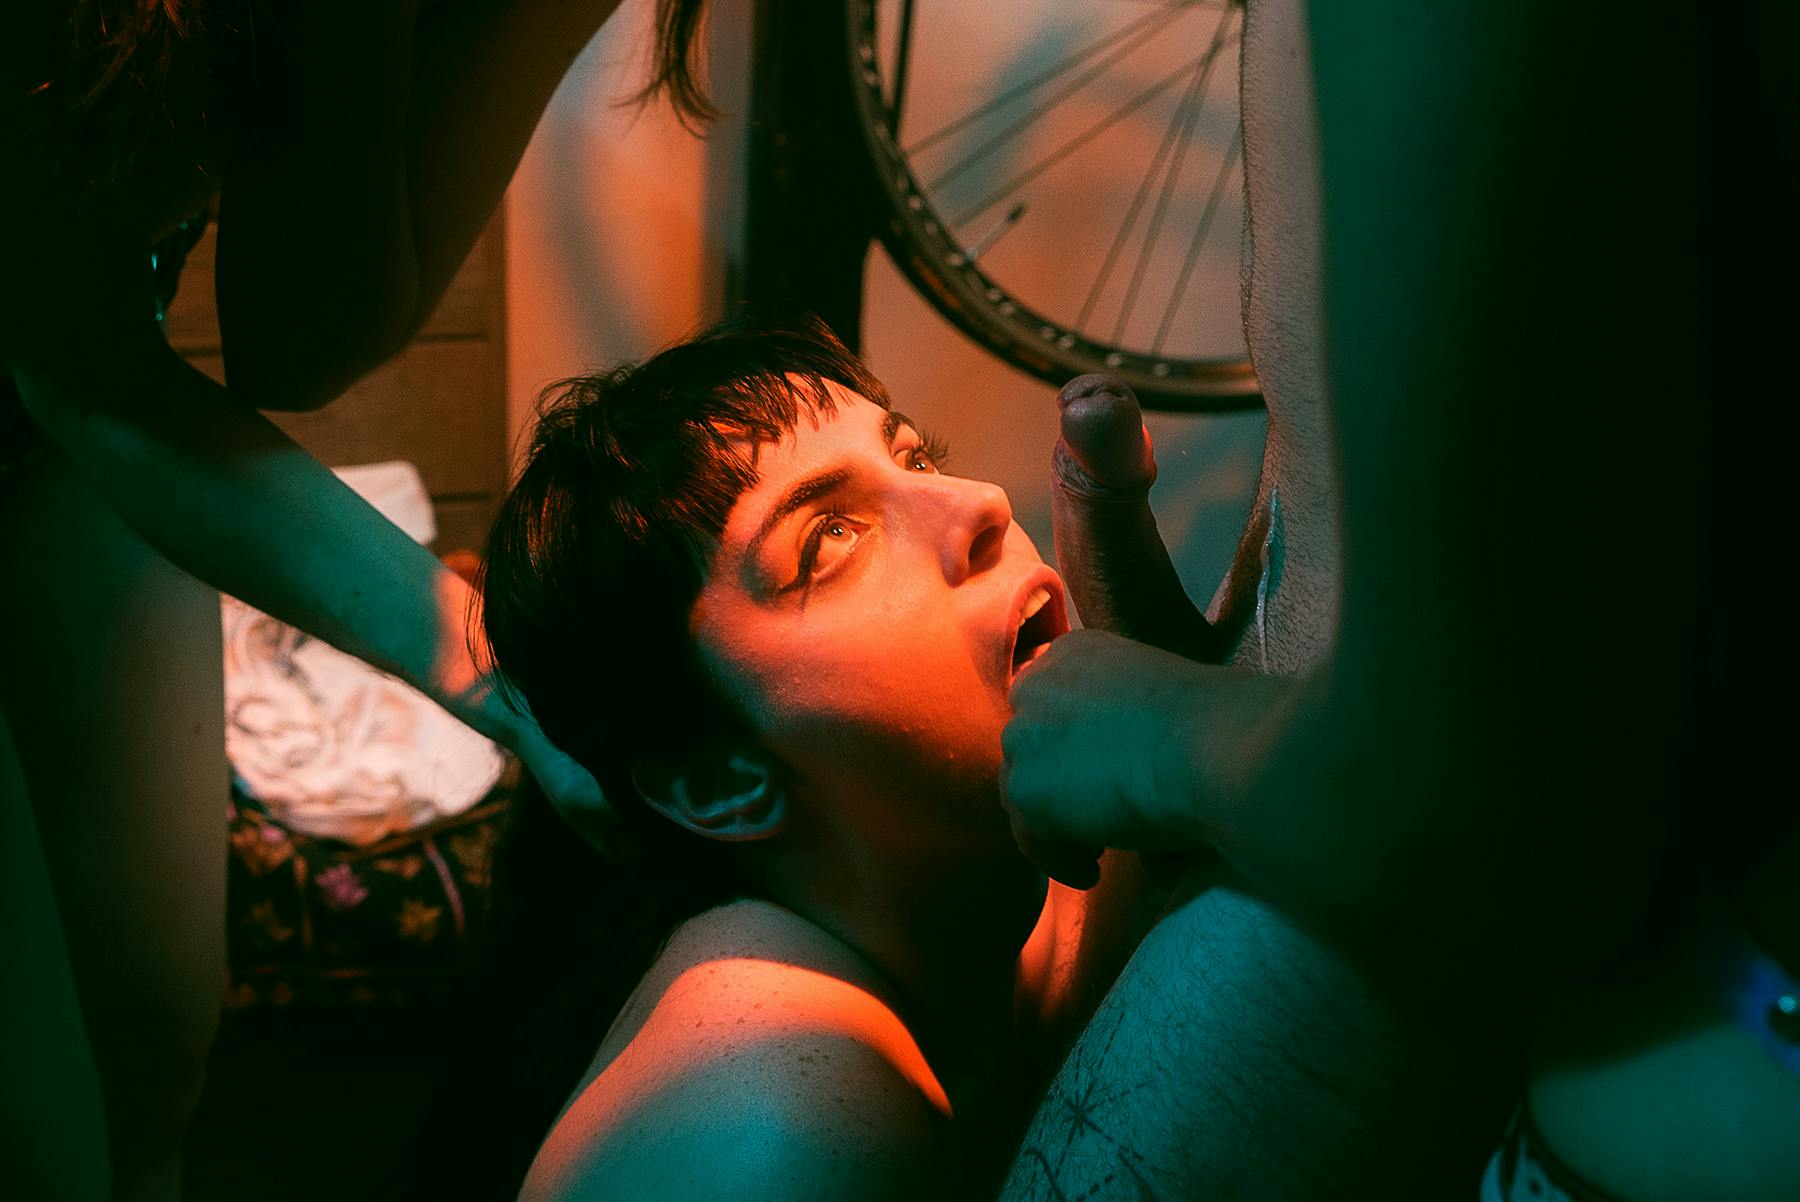 The Bike Club porn photos